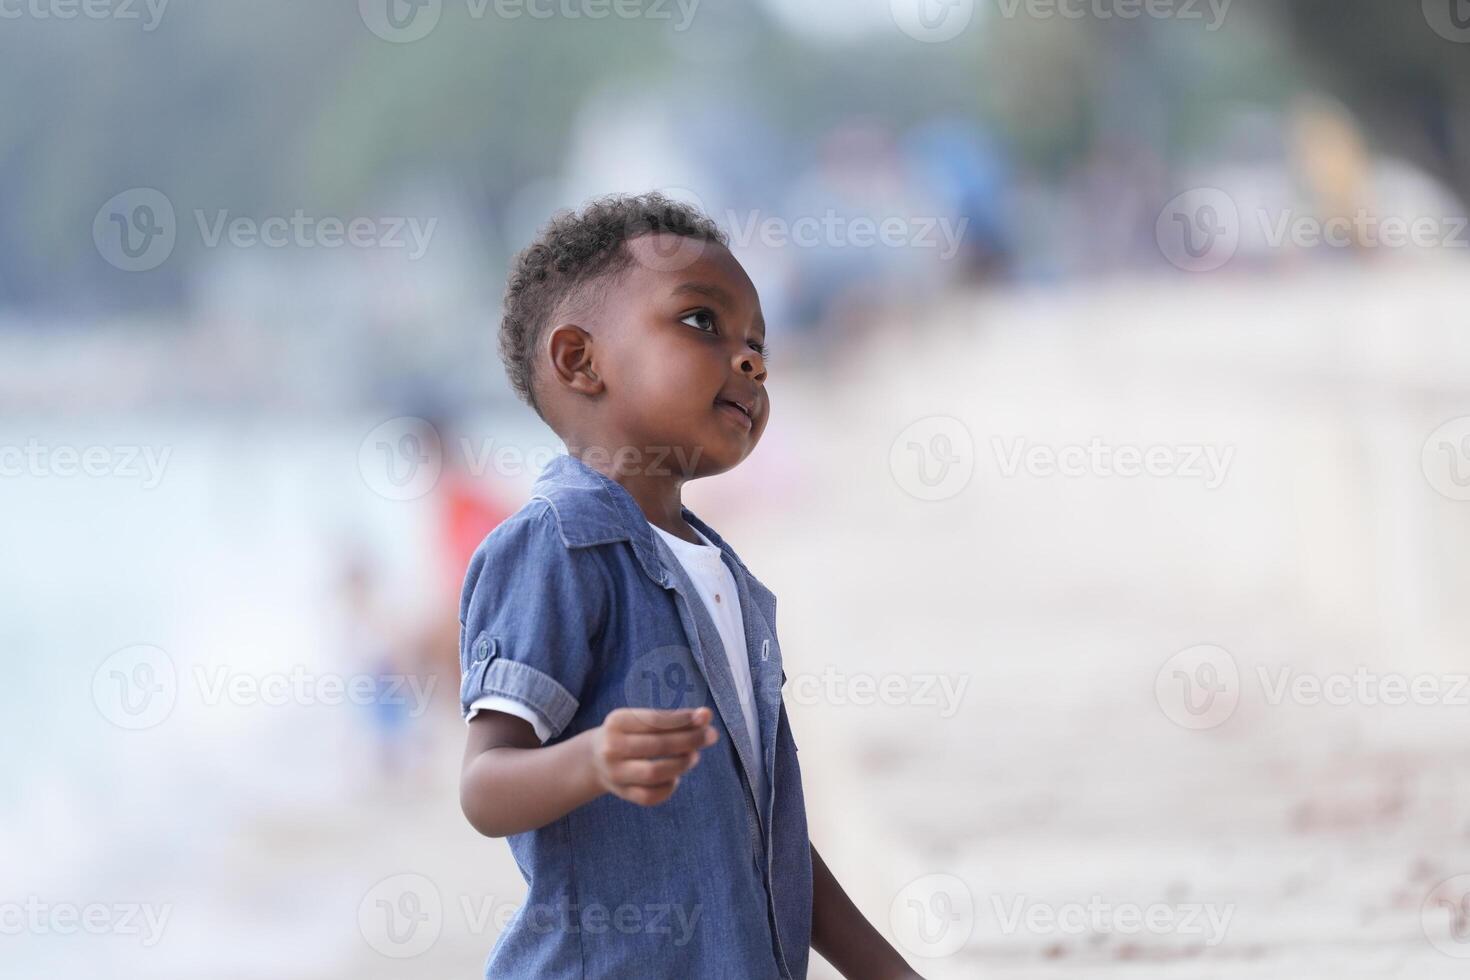 mezclado carrera africano y asiático chico es jugando a el al aire libre área. sonriente contento chico tiene divertido corriendo en el playa. retrato de chico estilo de vida con un único peinado. foto